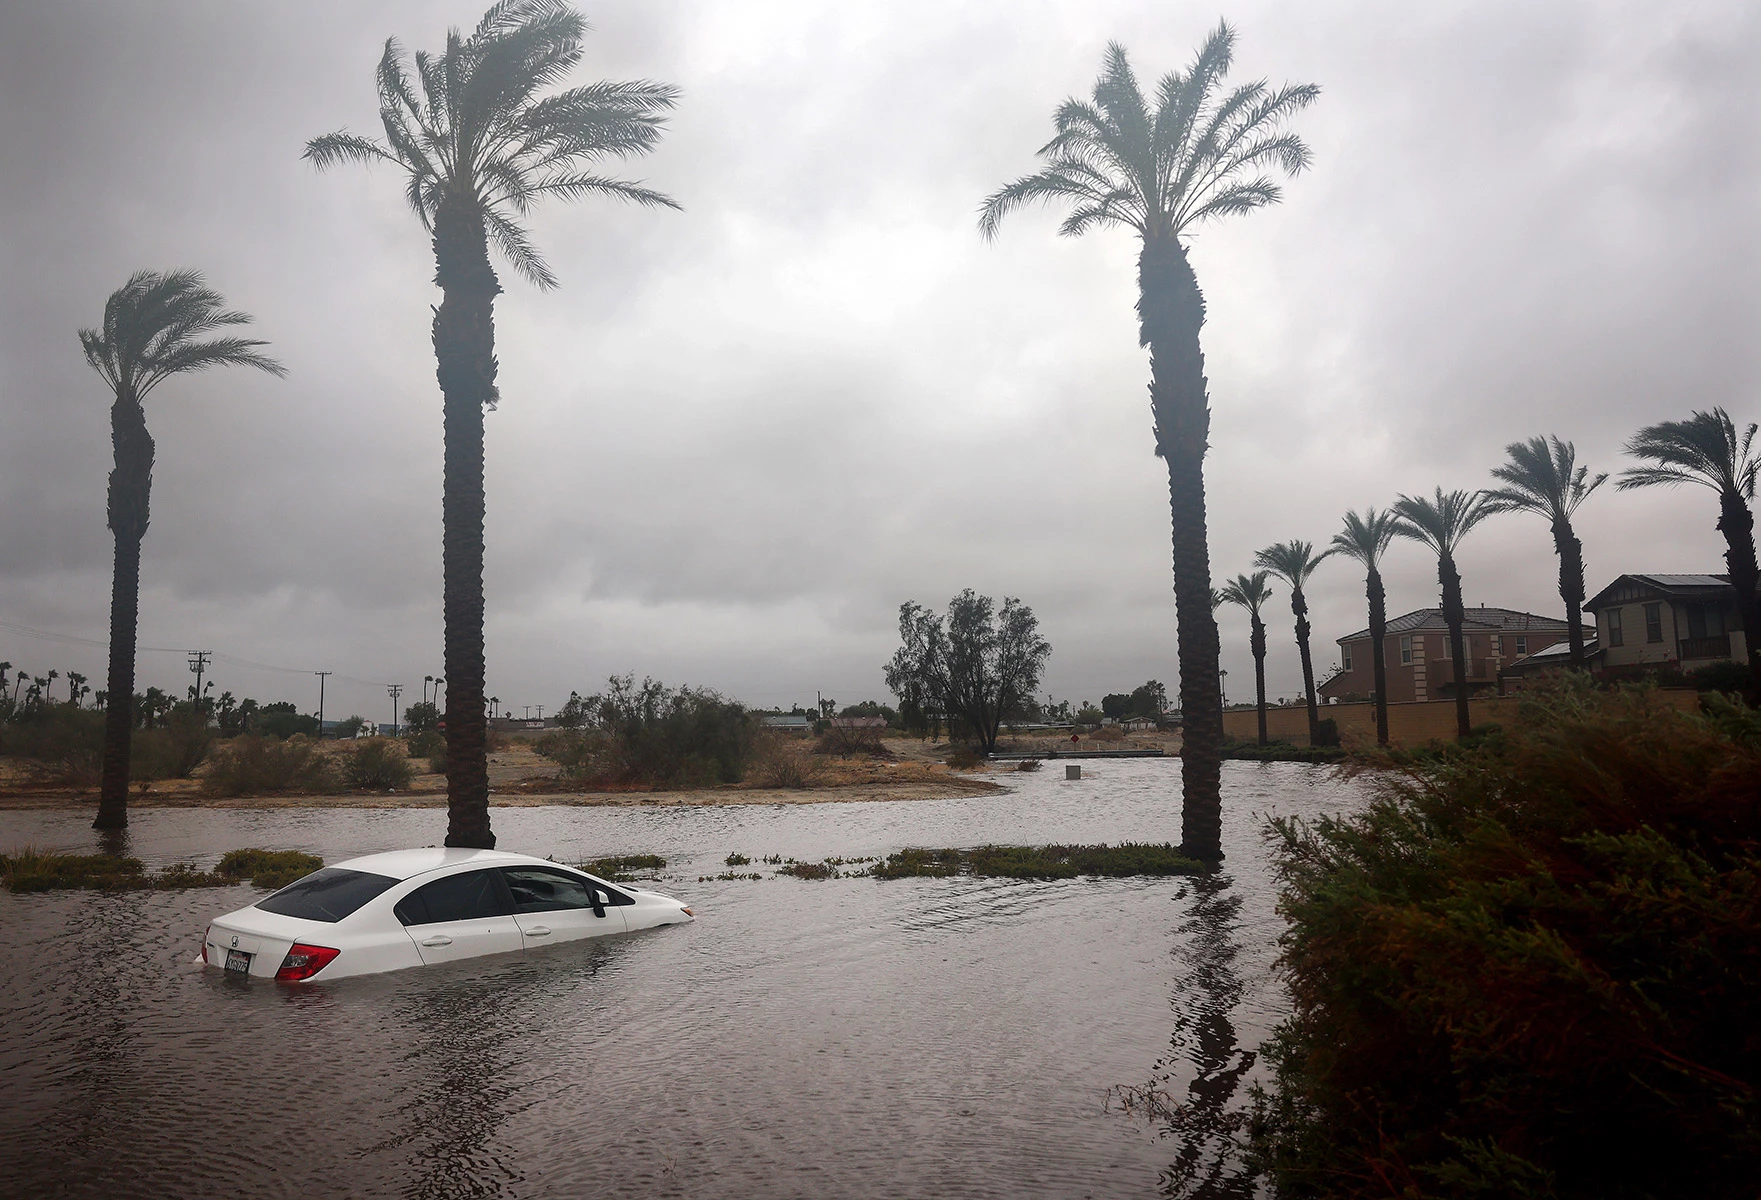 <p>Частично затопленный паводковыми водами автомобиль в Катидрал-Сити в Калифорнии. Из-за шторма властям пришлось полностью закрыть пляжи в ряде округов</p>